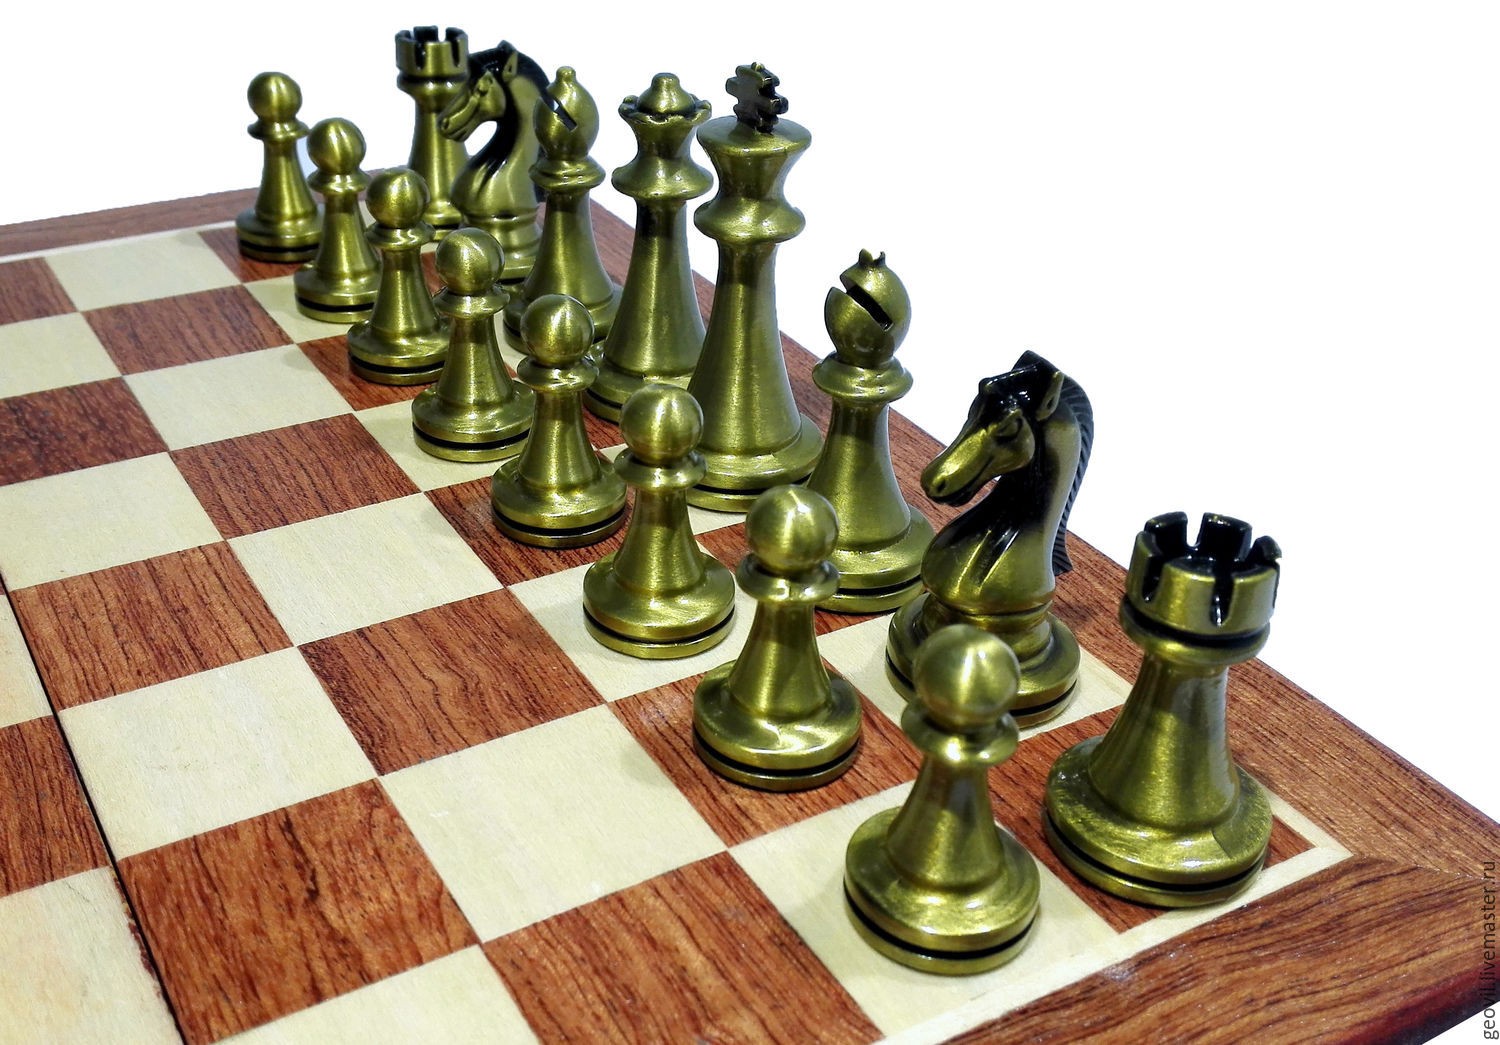 Cờ vua (Chess) - Papercraft: Để thể hiện tình yêu đối với trò chơi cờ vua hay đơn giản là muốn trang trí thêm không gian của mình, papercraft của trò chơi cờ vua chắc chắn là một lựa chọn tuyệt vời. Hình ảnh chi tiết và độ chân thực của những chiếc quân cờ sẽ khiến ai nhìn thấy cũng phải trầm trồ.